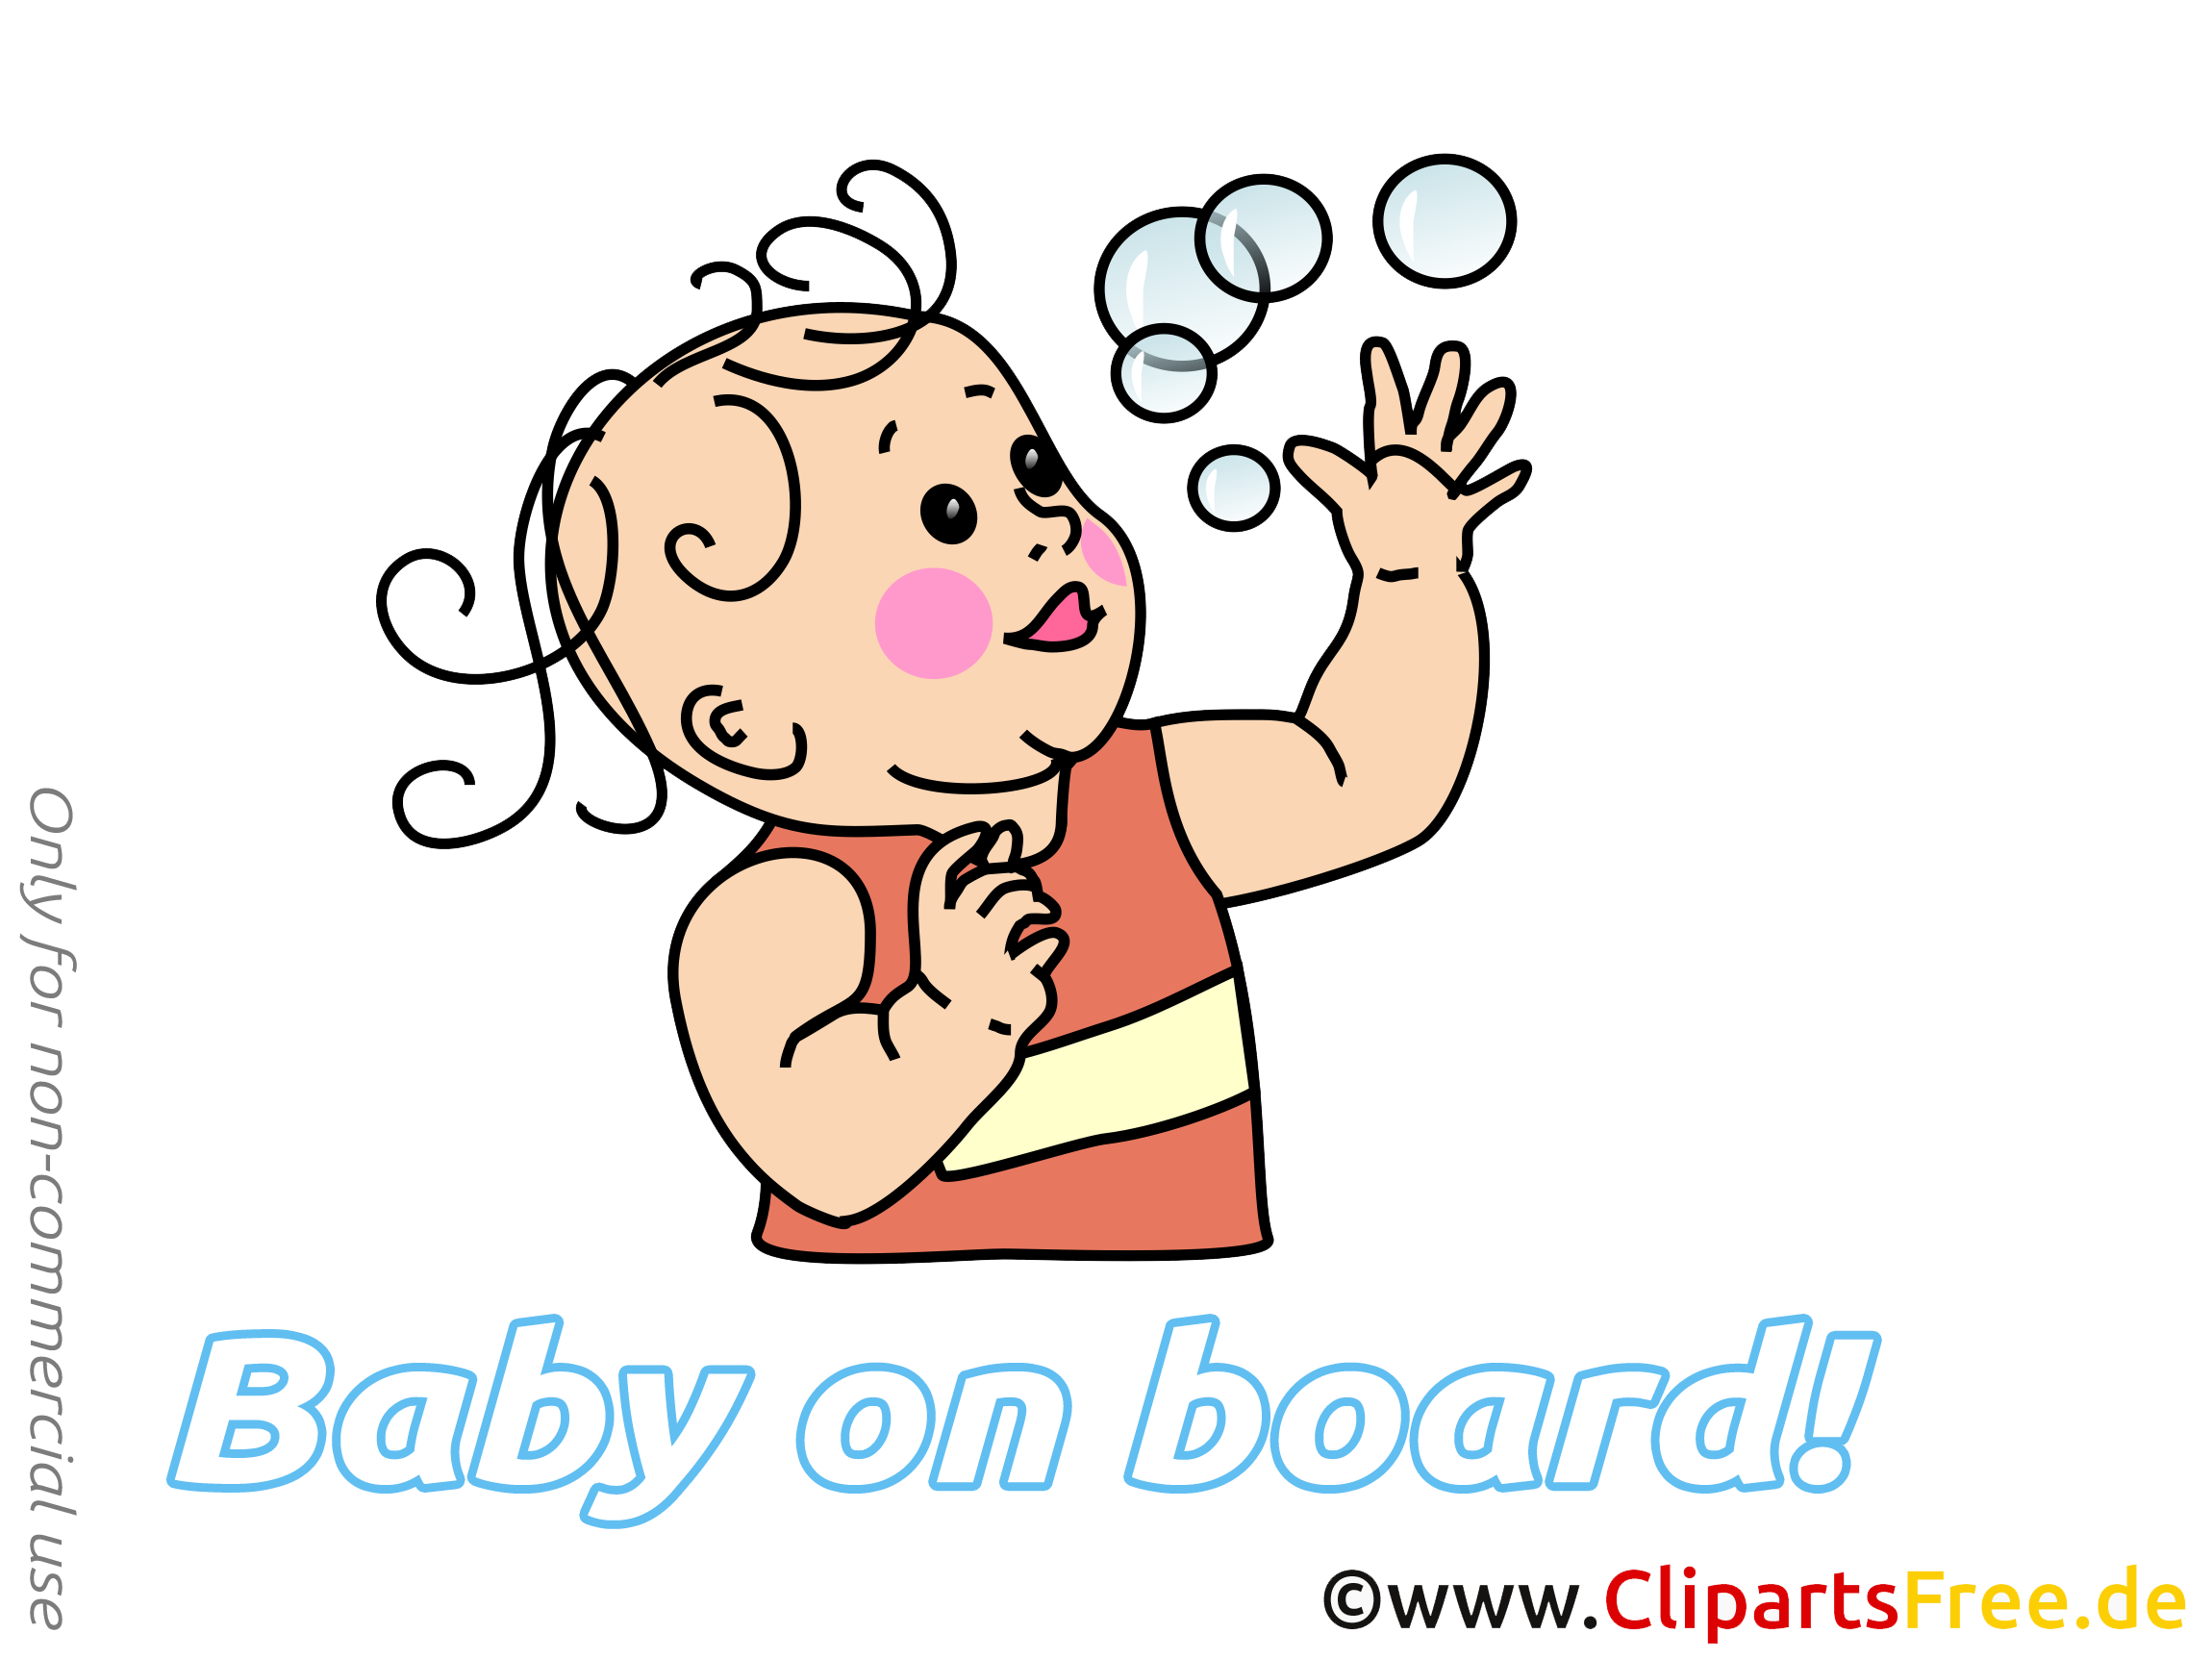 Bulles de savon image gratuite – Bébé à bord illustration